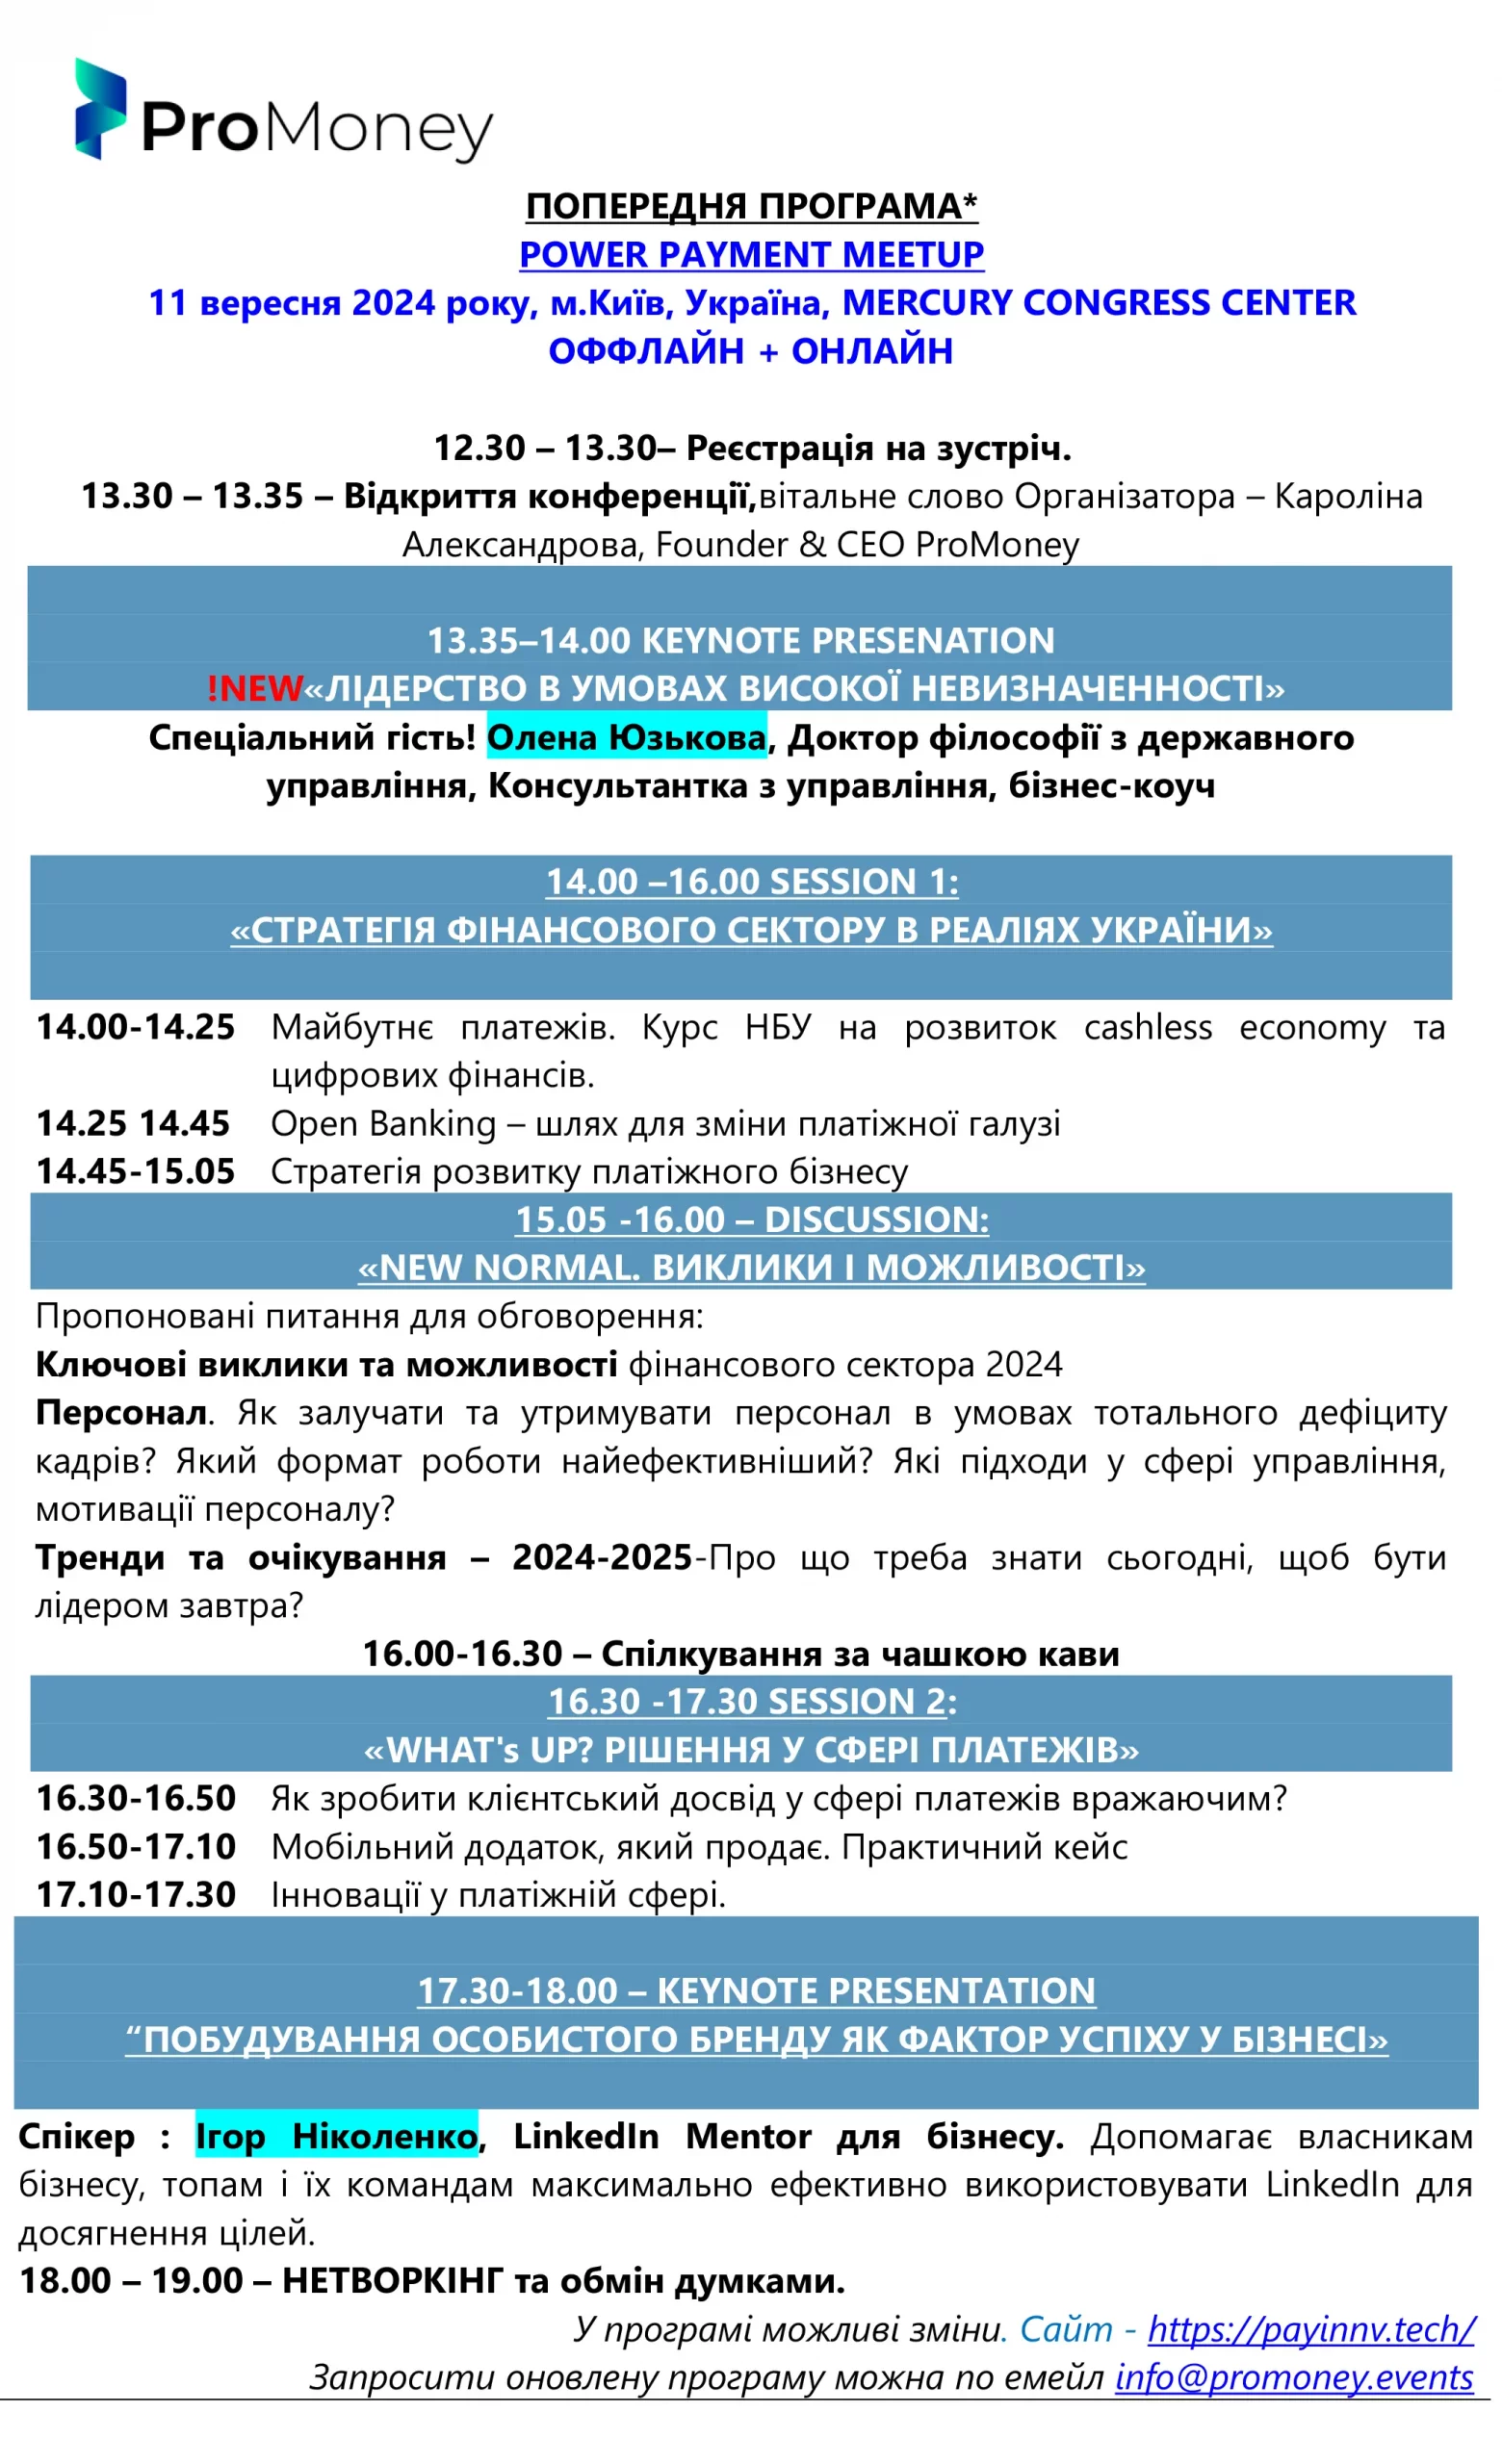 В Киеве состоится конференция POWER PAYMENT MEETUP